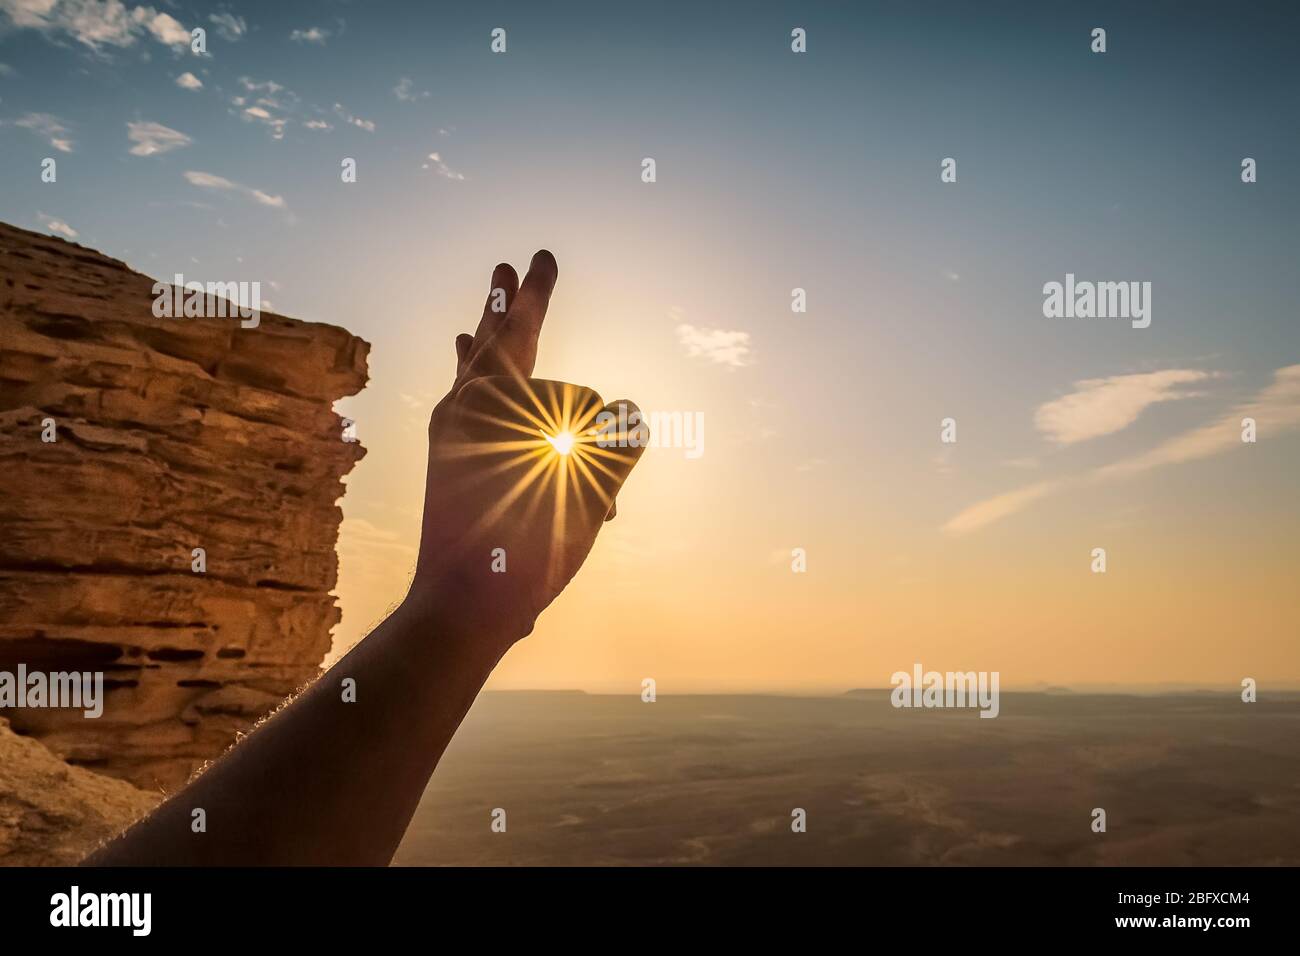 Sole raggi attraverso le dita - bordo del mondo Arabia Saudita. ( concentrazione selettiva su soggetto e sfondo sfocati) Foto Stock